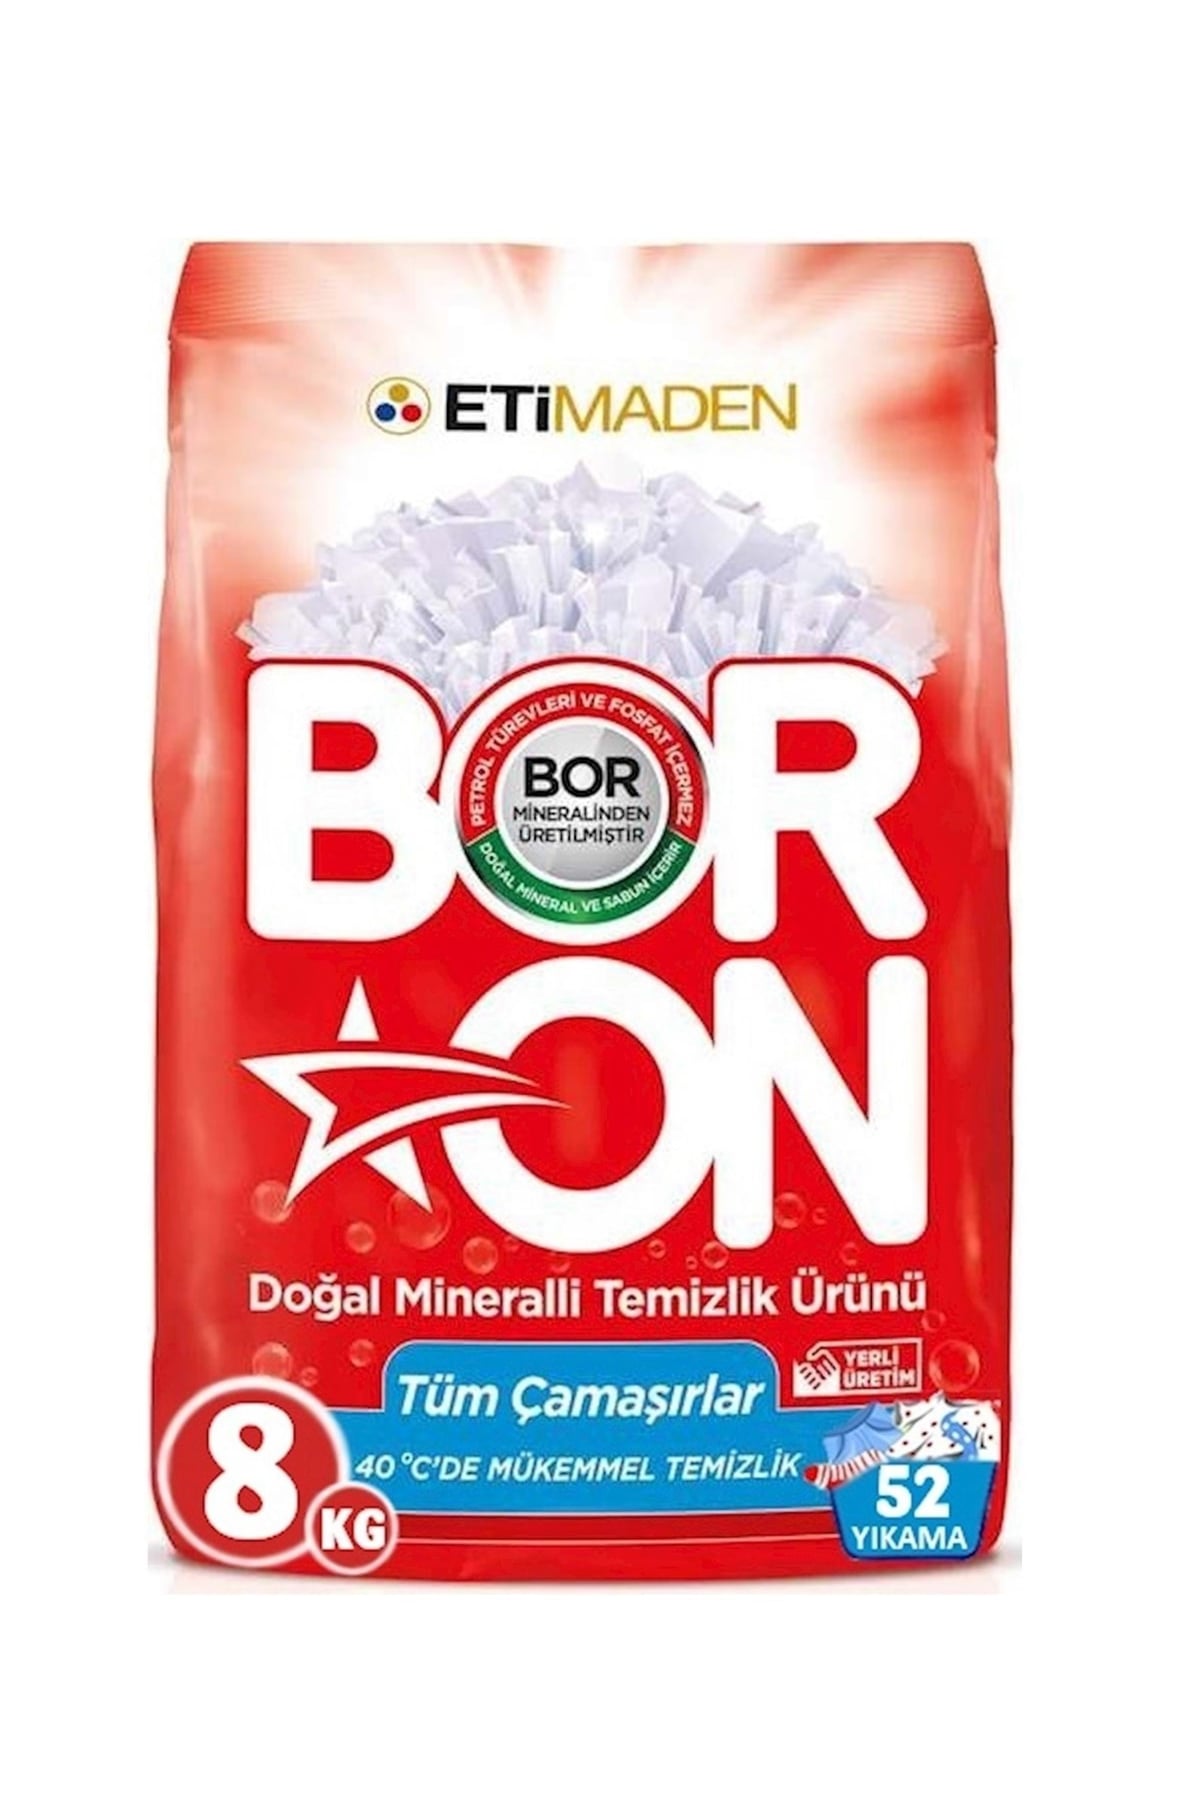  Boron Deterjan & Temizlik Ürün Fiyatları